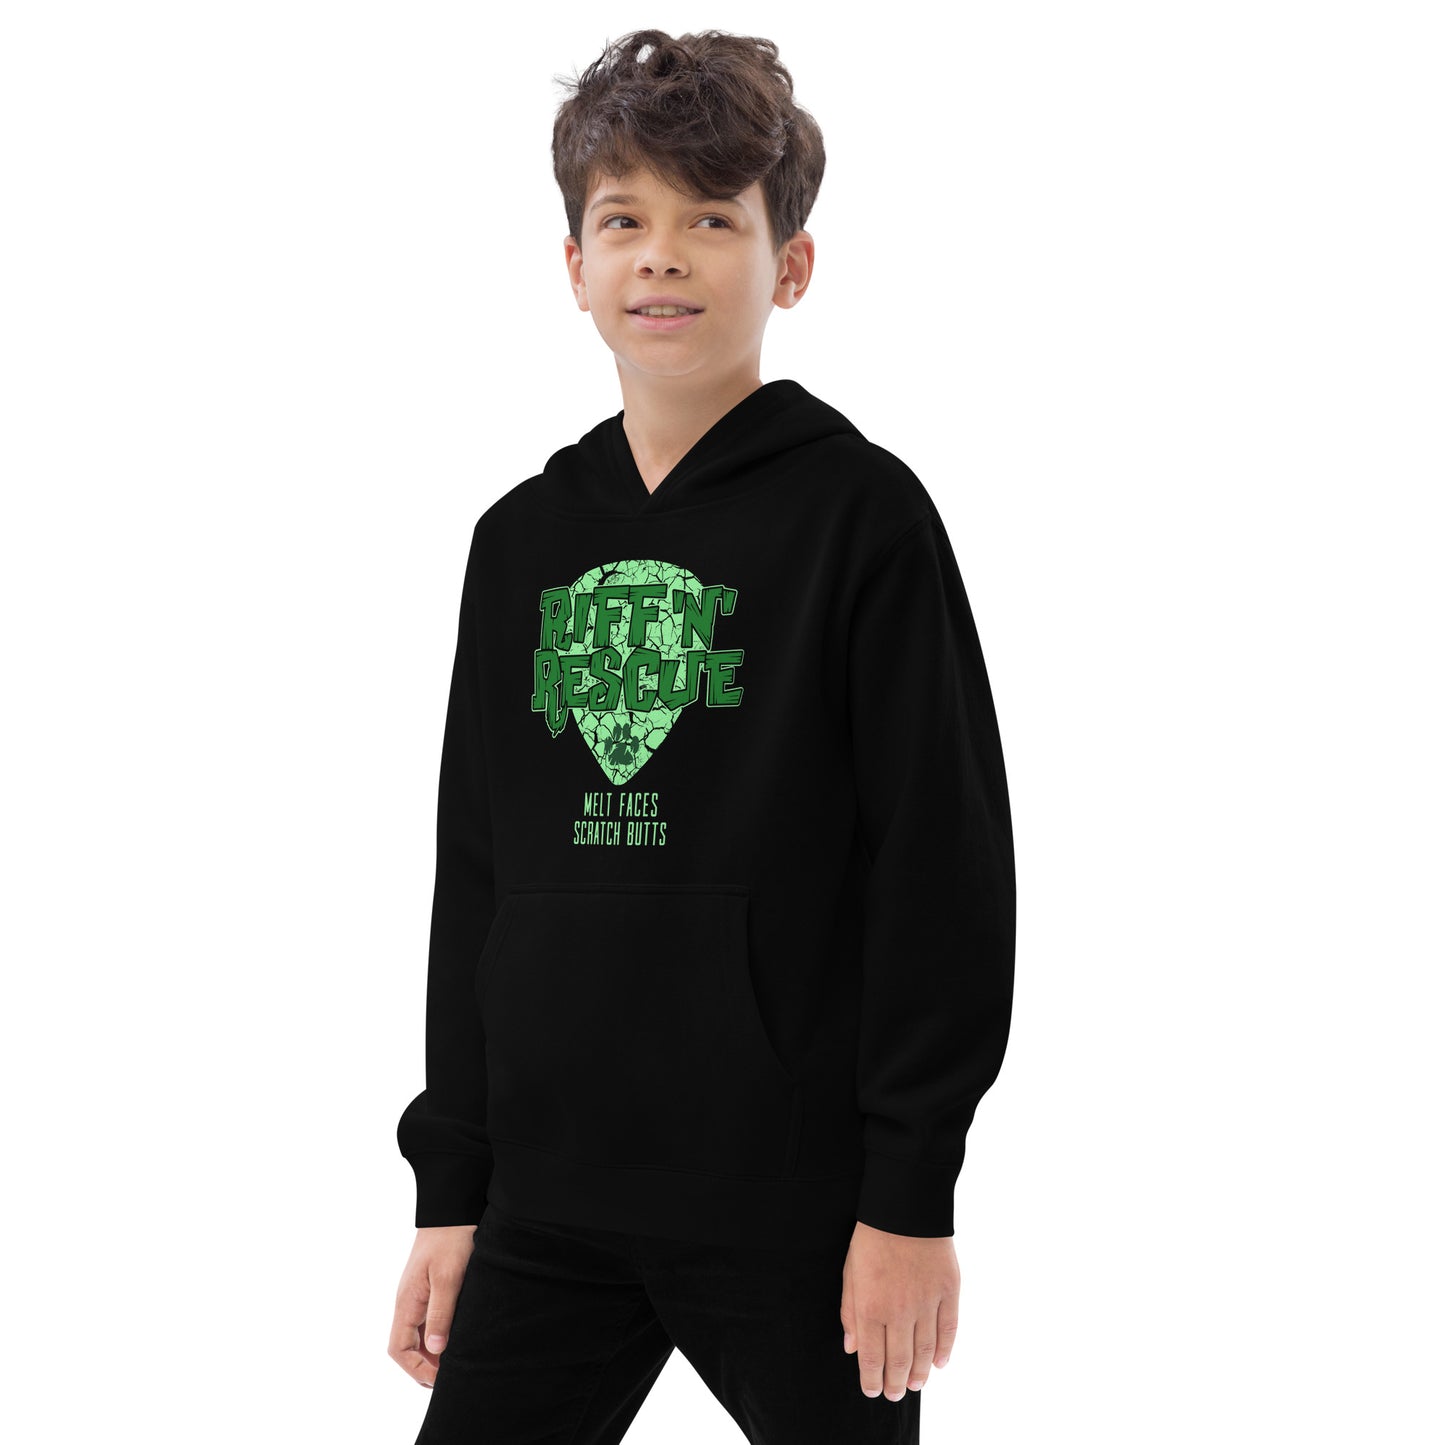 Crackle Green Kids fleece hoodie